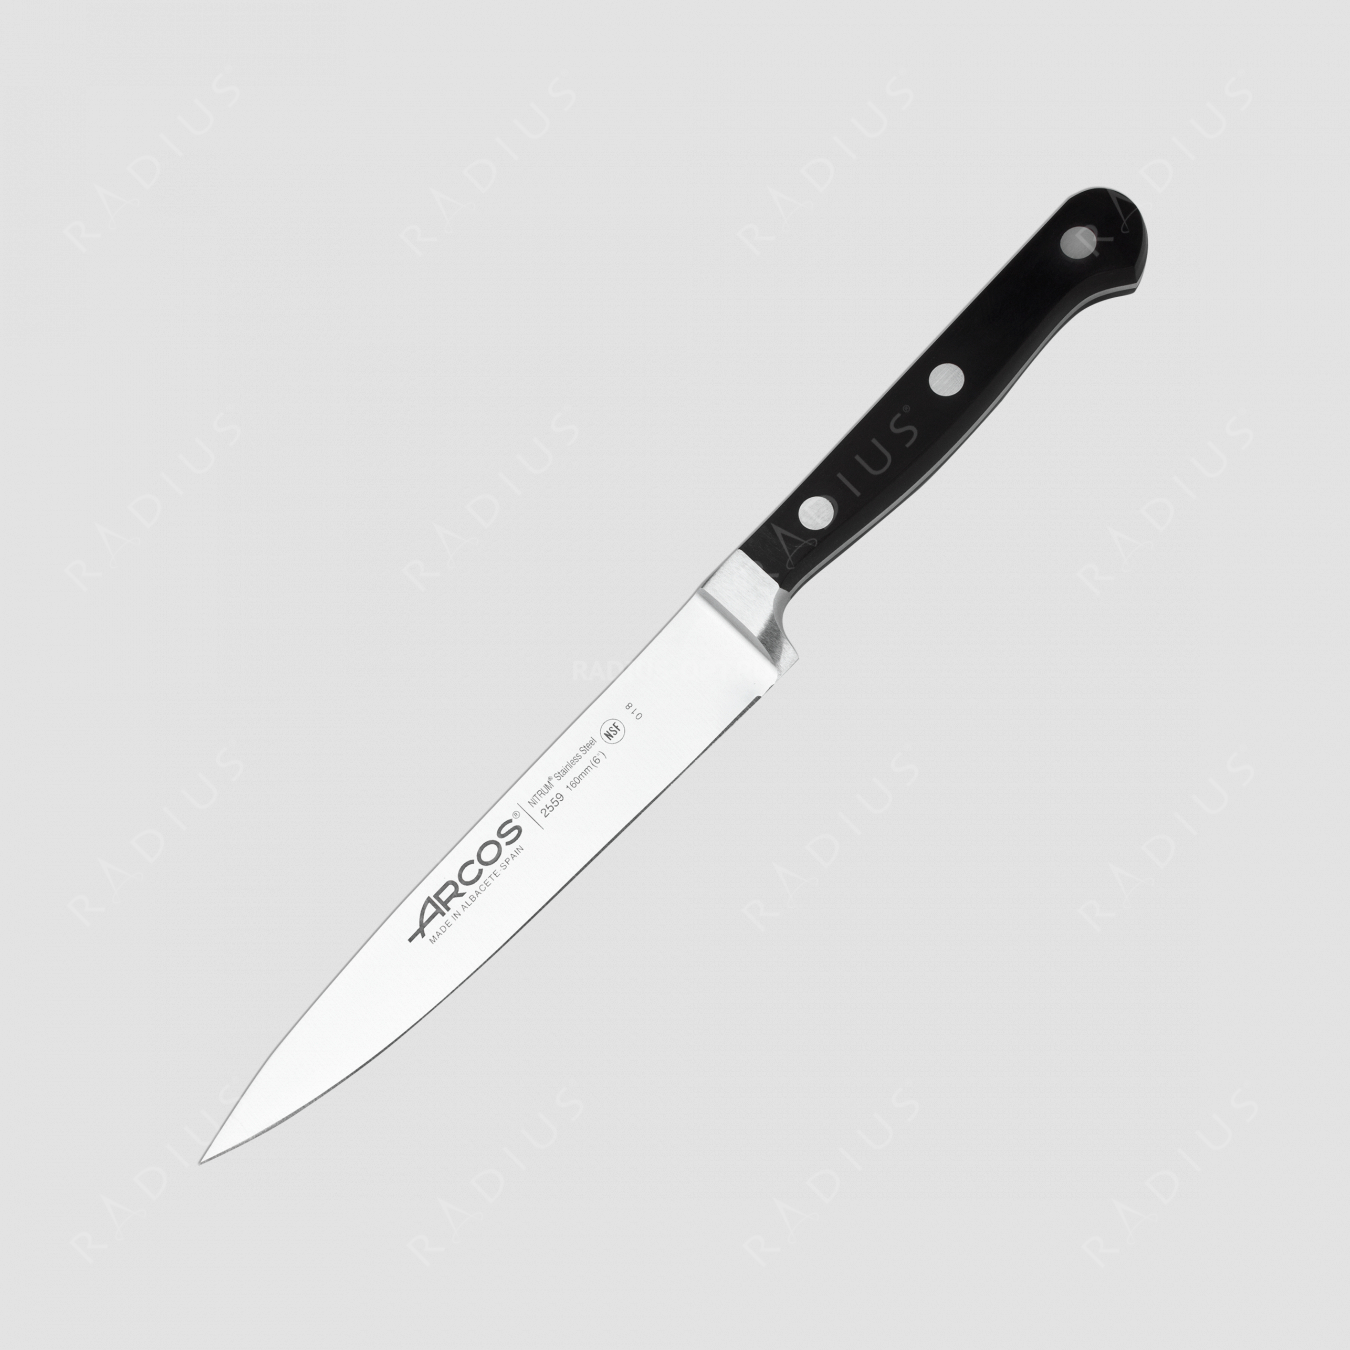 Нож кухонный 16 см, серия Clasica, ARCOS, Испания